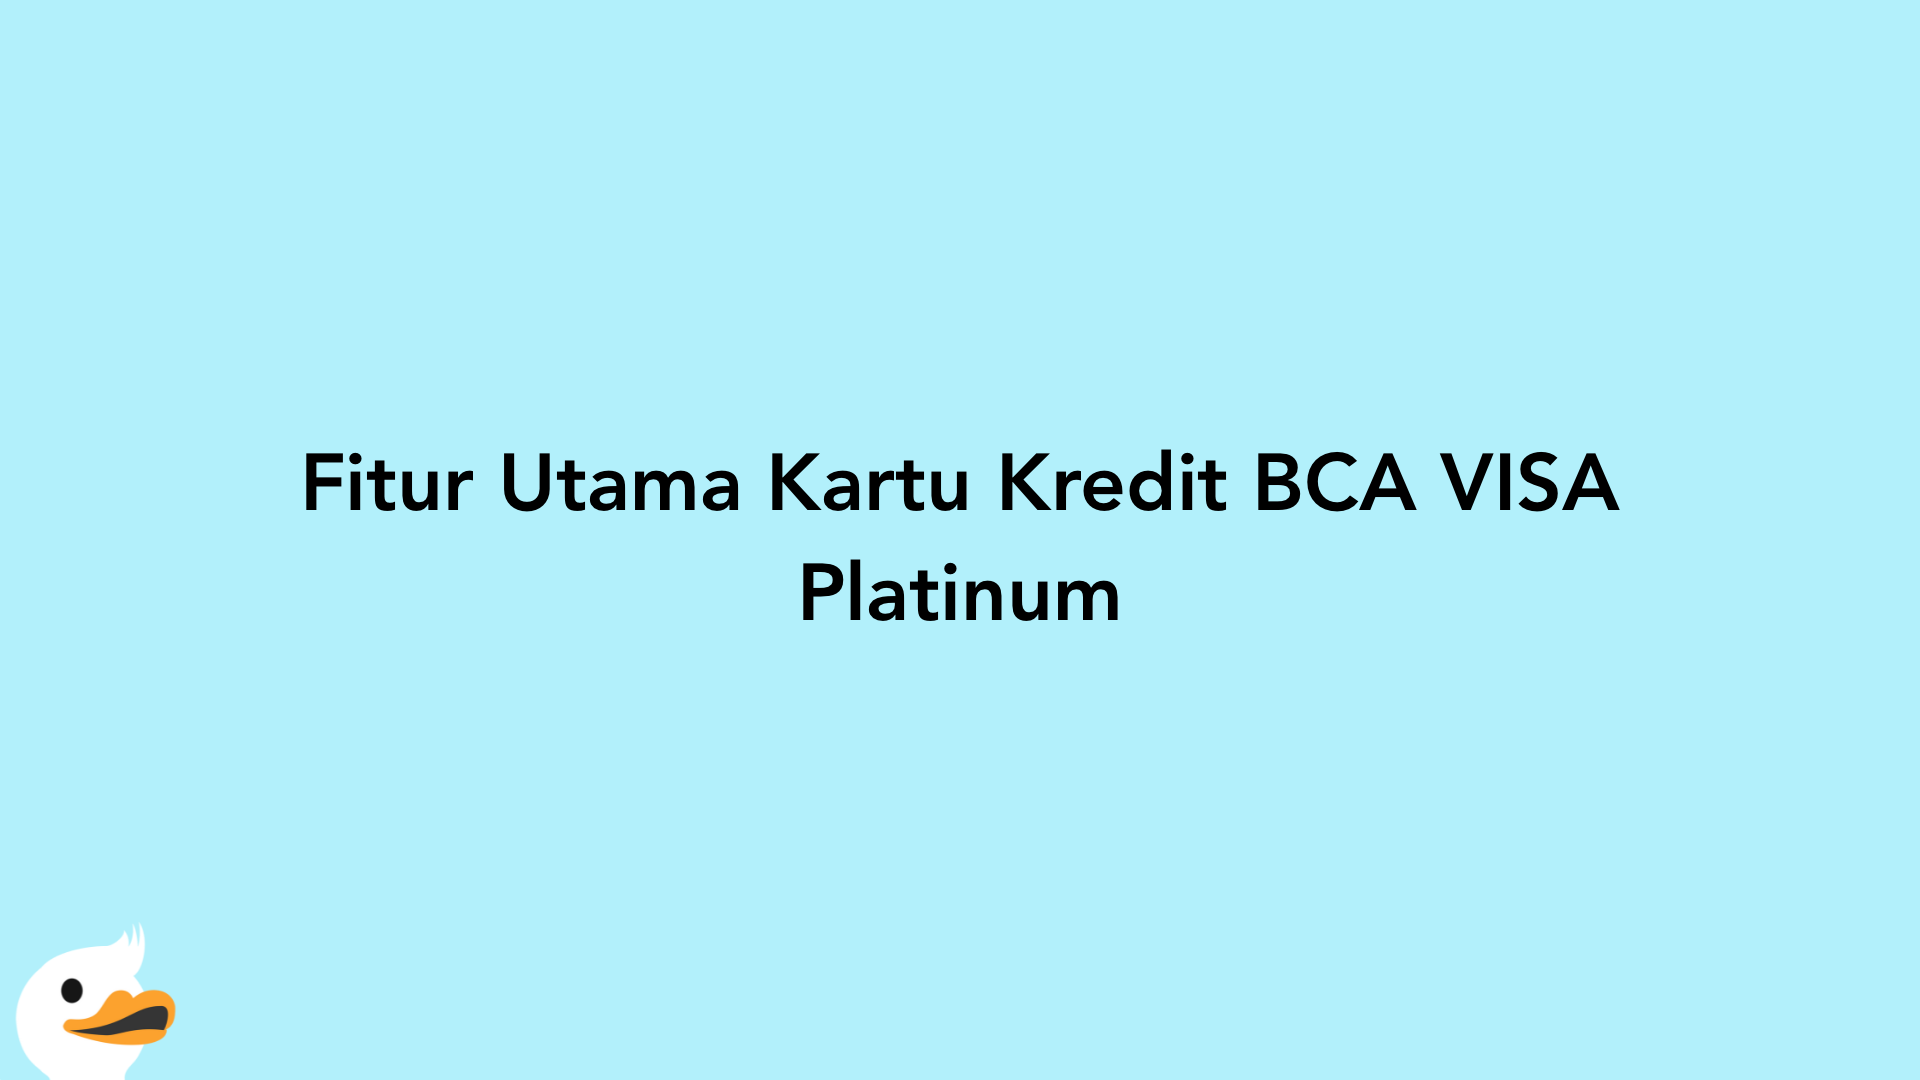 Fitur Utama Kartu Kredit BCA VISA Platinum